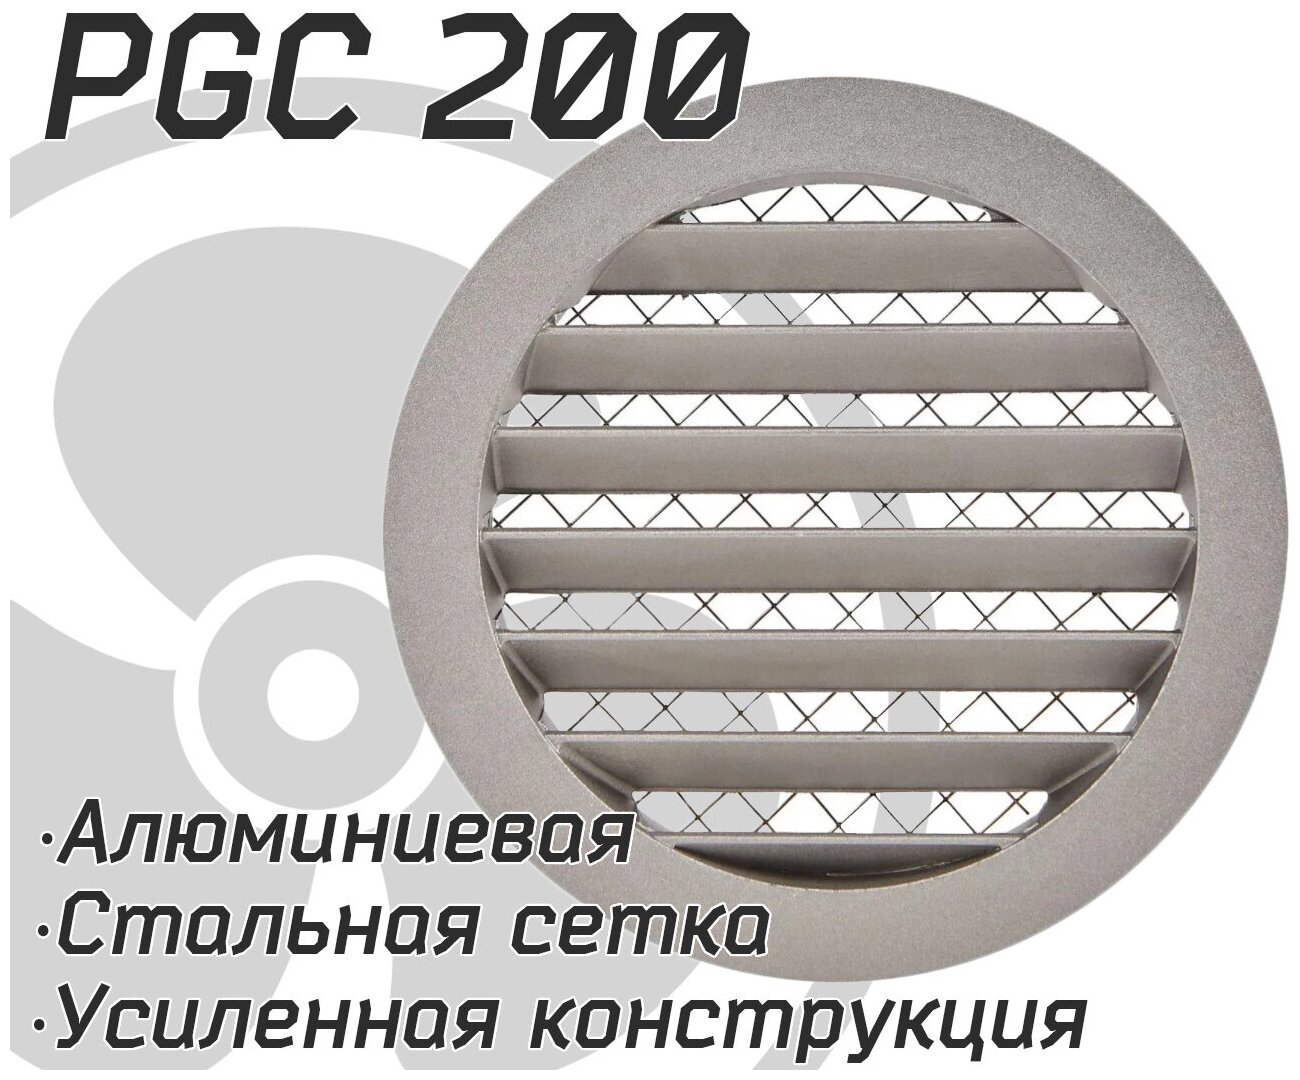 Решетка наружная, уличная PGC / IGC 200, алюминиевая усиленная, защита от осадков, стальная сетка от насекомых и мусора.